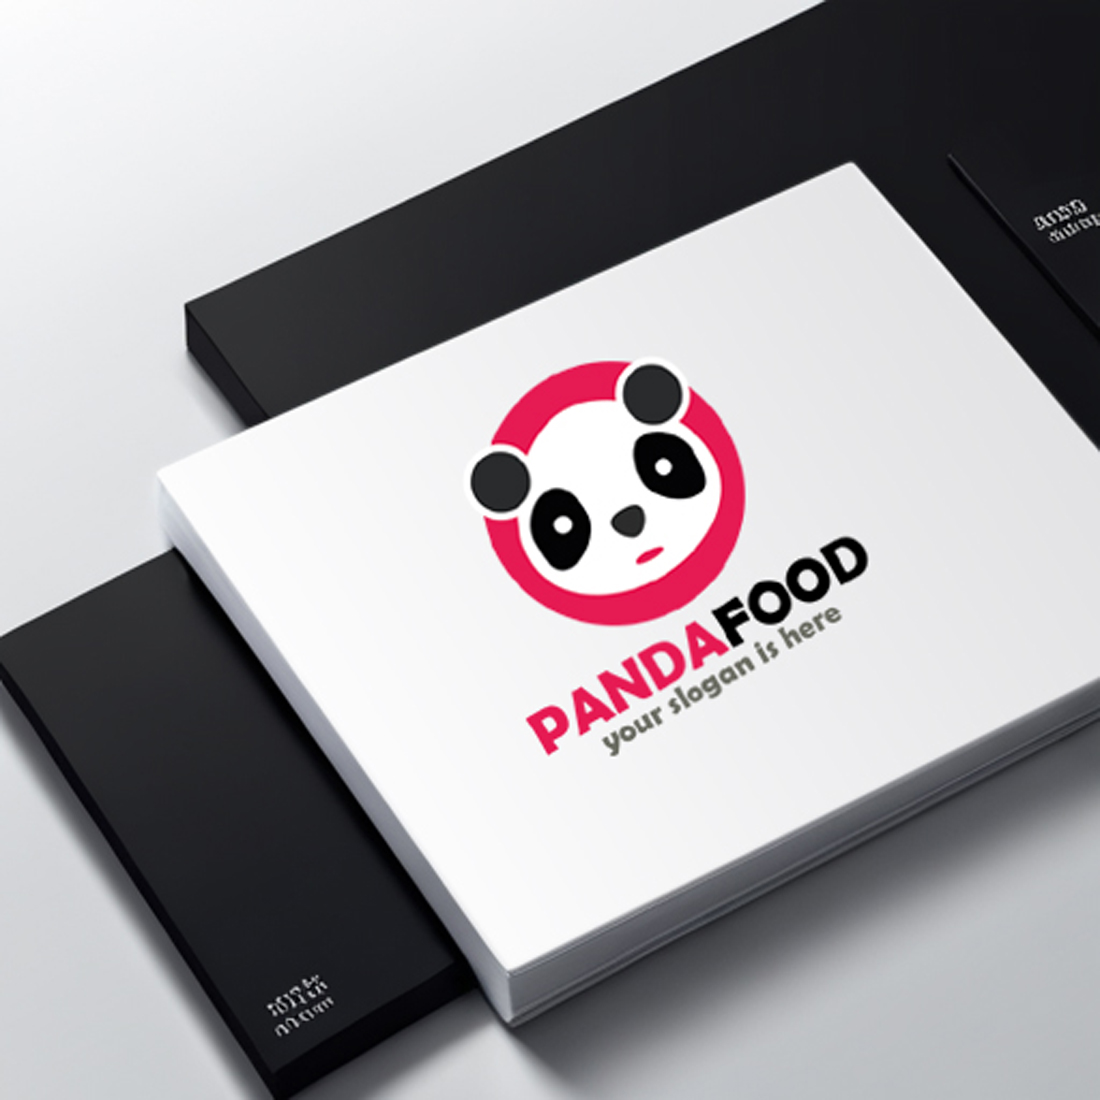 Food Panda Logo cover image.